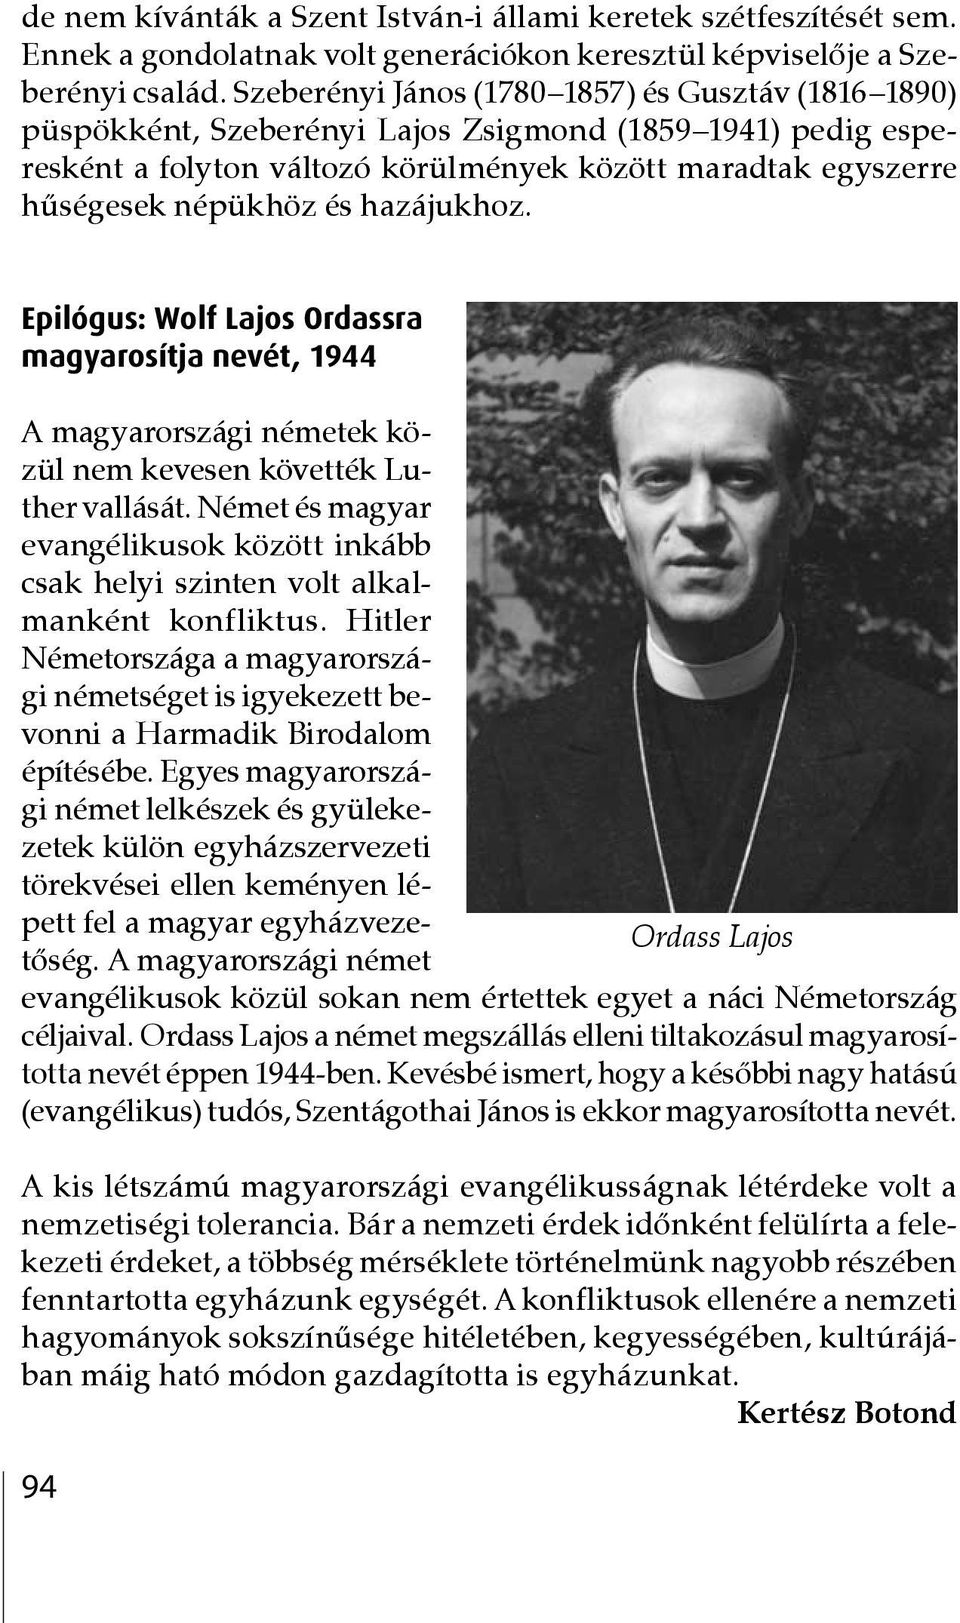 hazájukhoz. Epilógus: Wolf Lajos Ordassra magyarosítja nevét, 1944 A magyarországi németek közül nem kevesen követték Luther vallását.